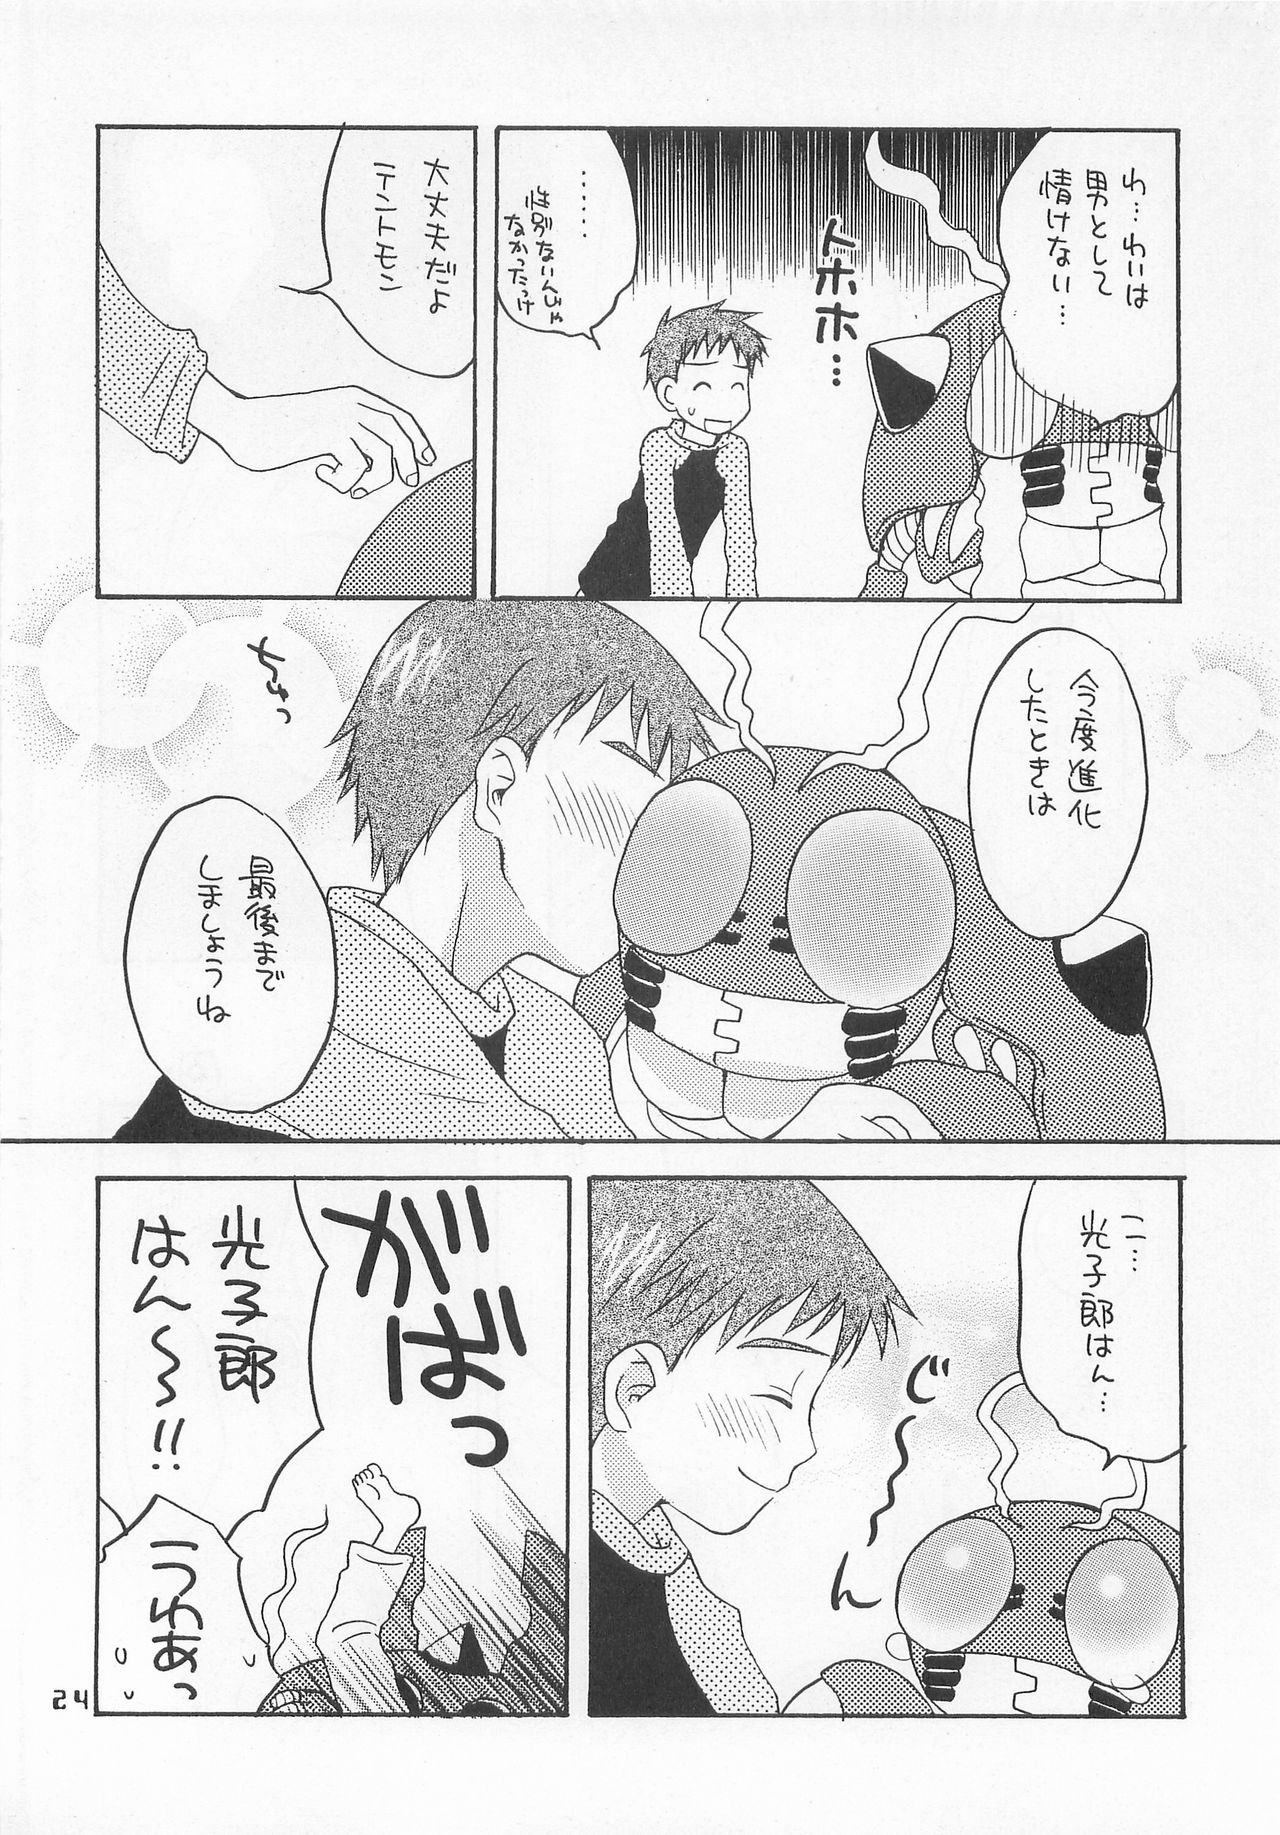 (HaruCC6) [Haniwa Mania, Kuru Guru DNA (Pon Takahanada, Hoshiai Hiro)] Jogress Daihyakka (Digimon Adventure 02) page 23 full